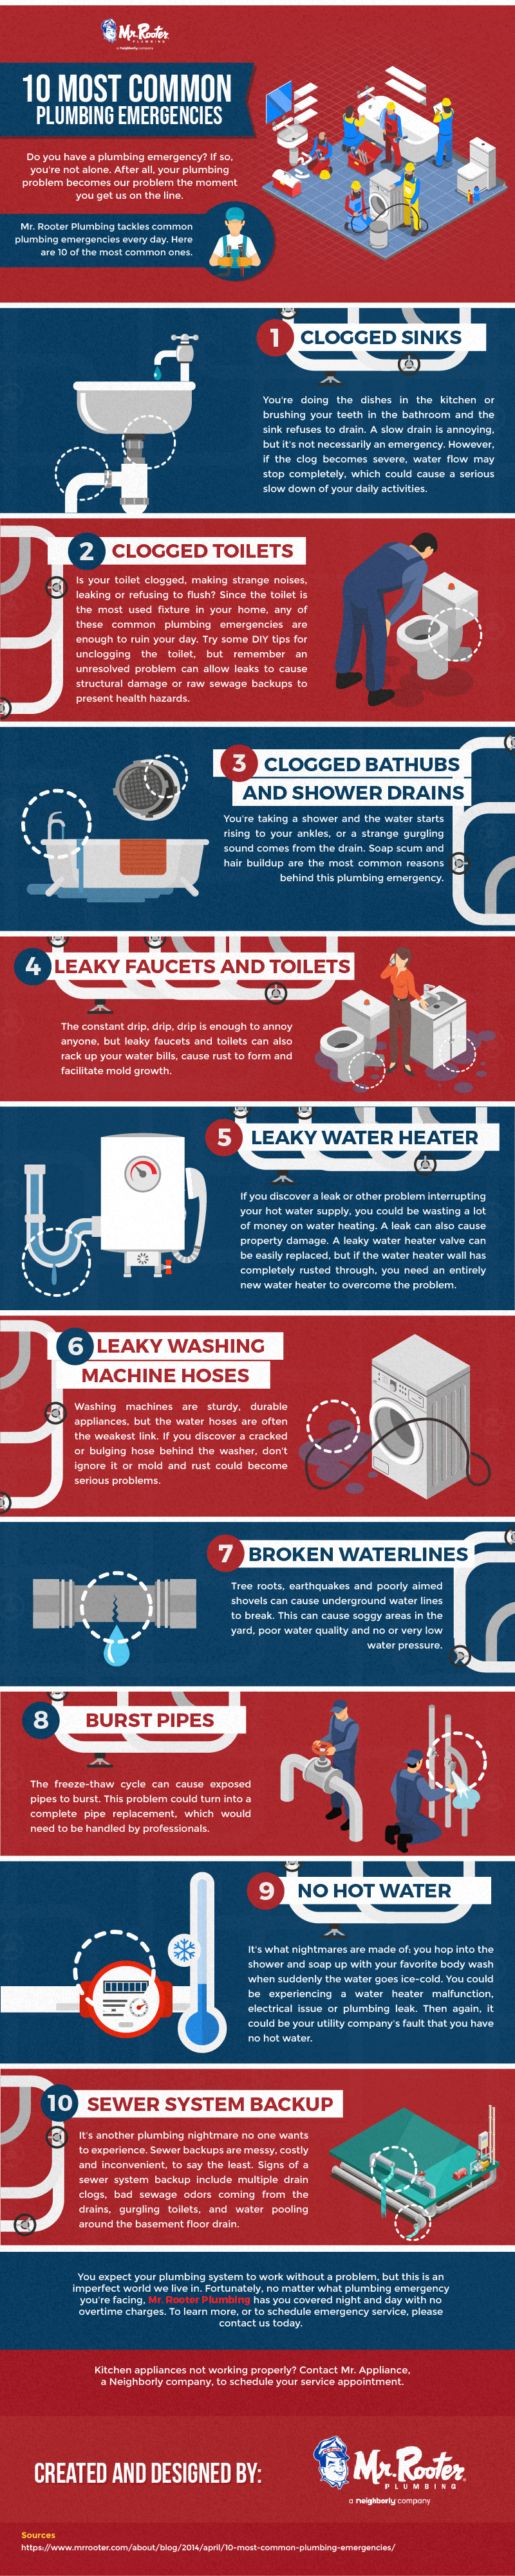 10 Most Common Plumbing Emergencies